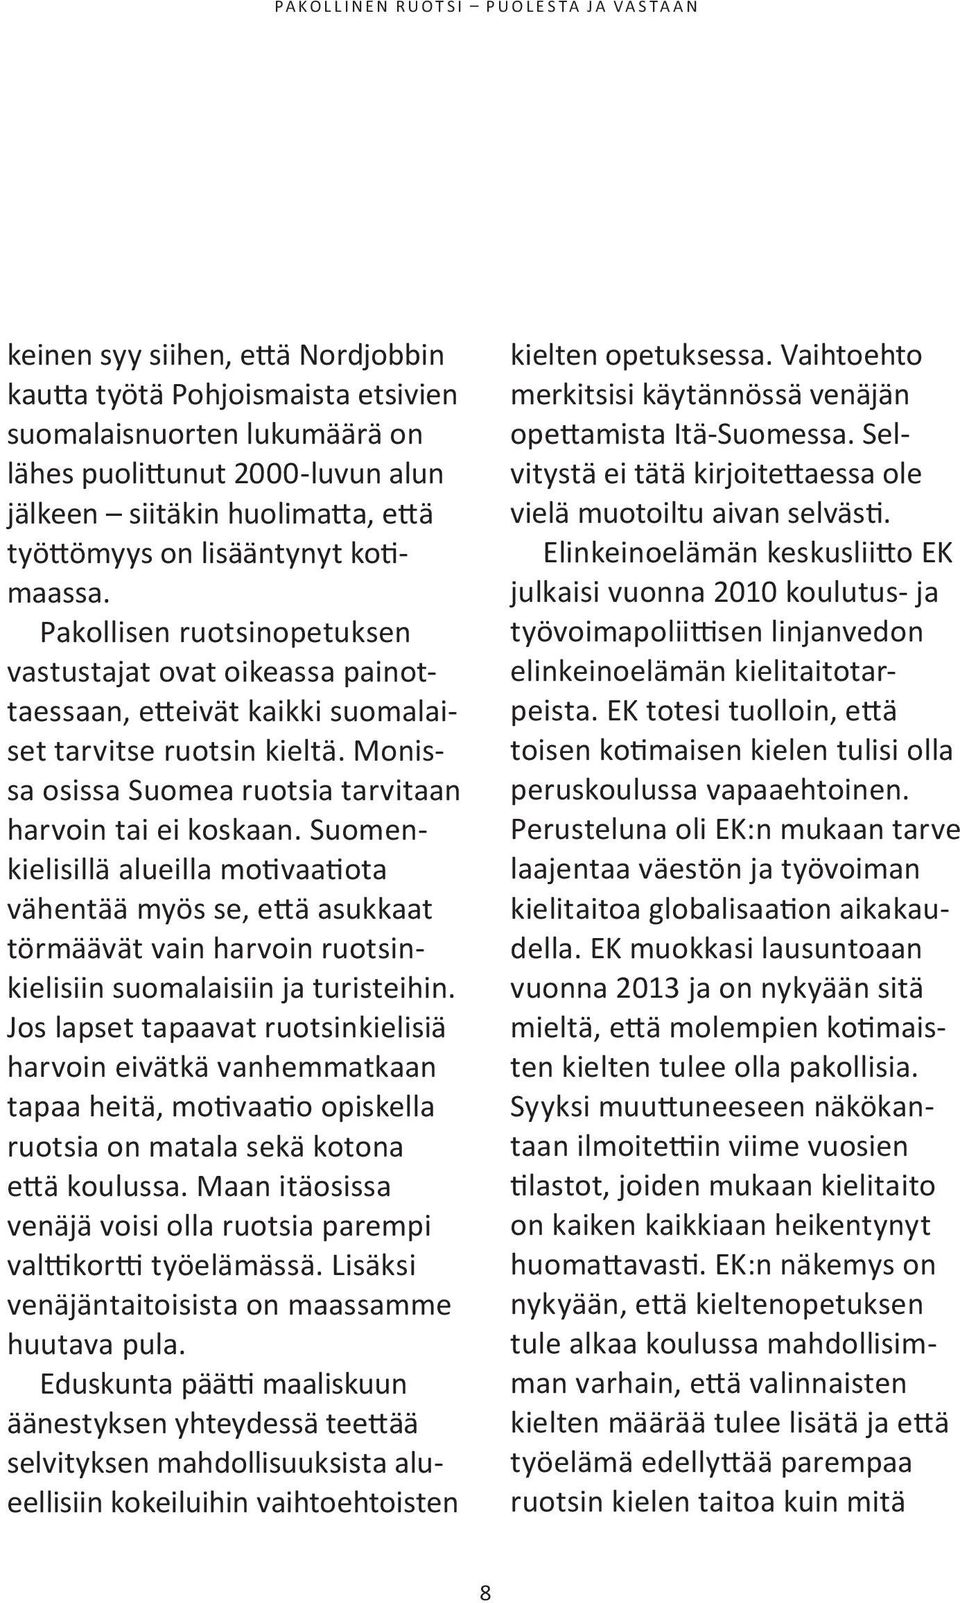 suomenkielisillä alueilla motivaatiota vähentää myös se, että asukkaat törmäävät vain harvoin ruotsinkielisiin suomalaisiin ja turisteihin.